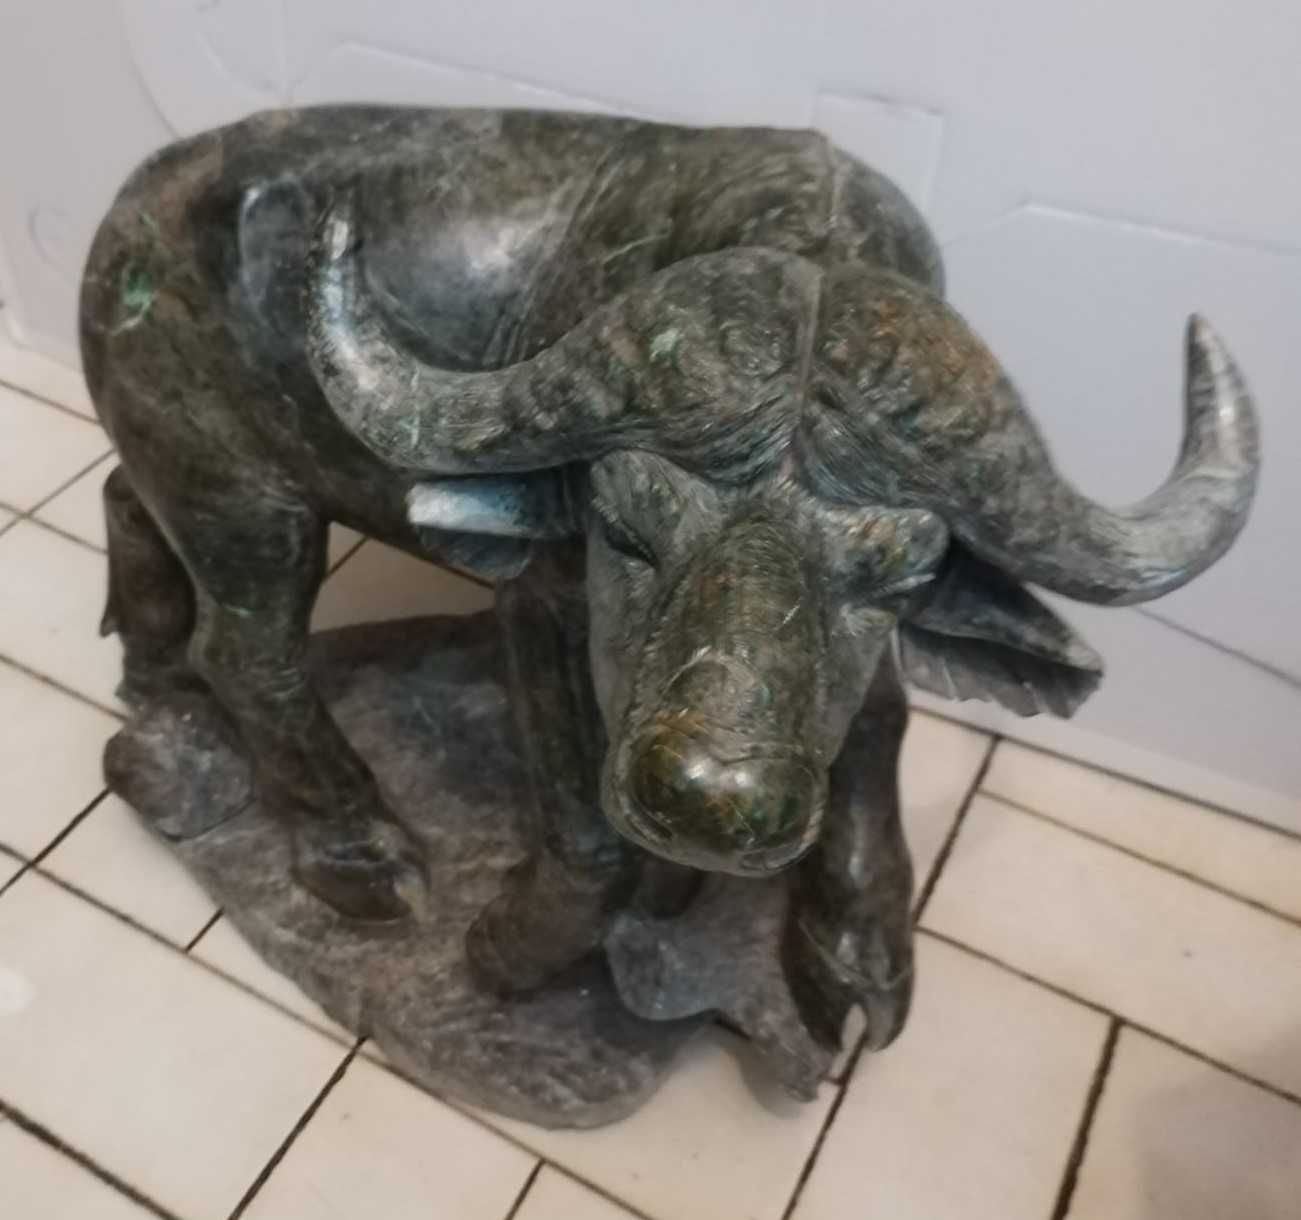 Grande Bufalo esculpido em pedra verdite - Arte Africana